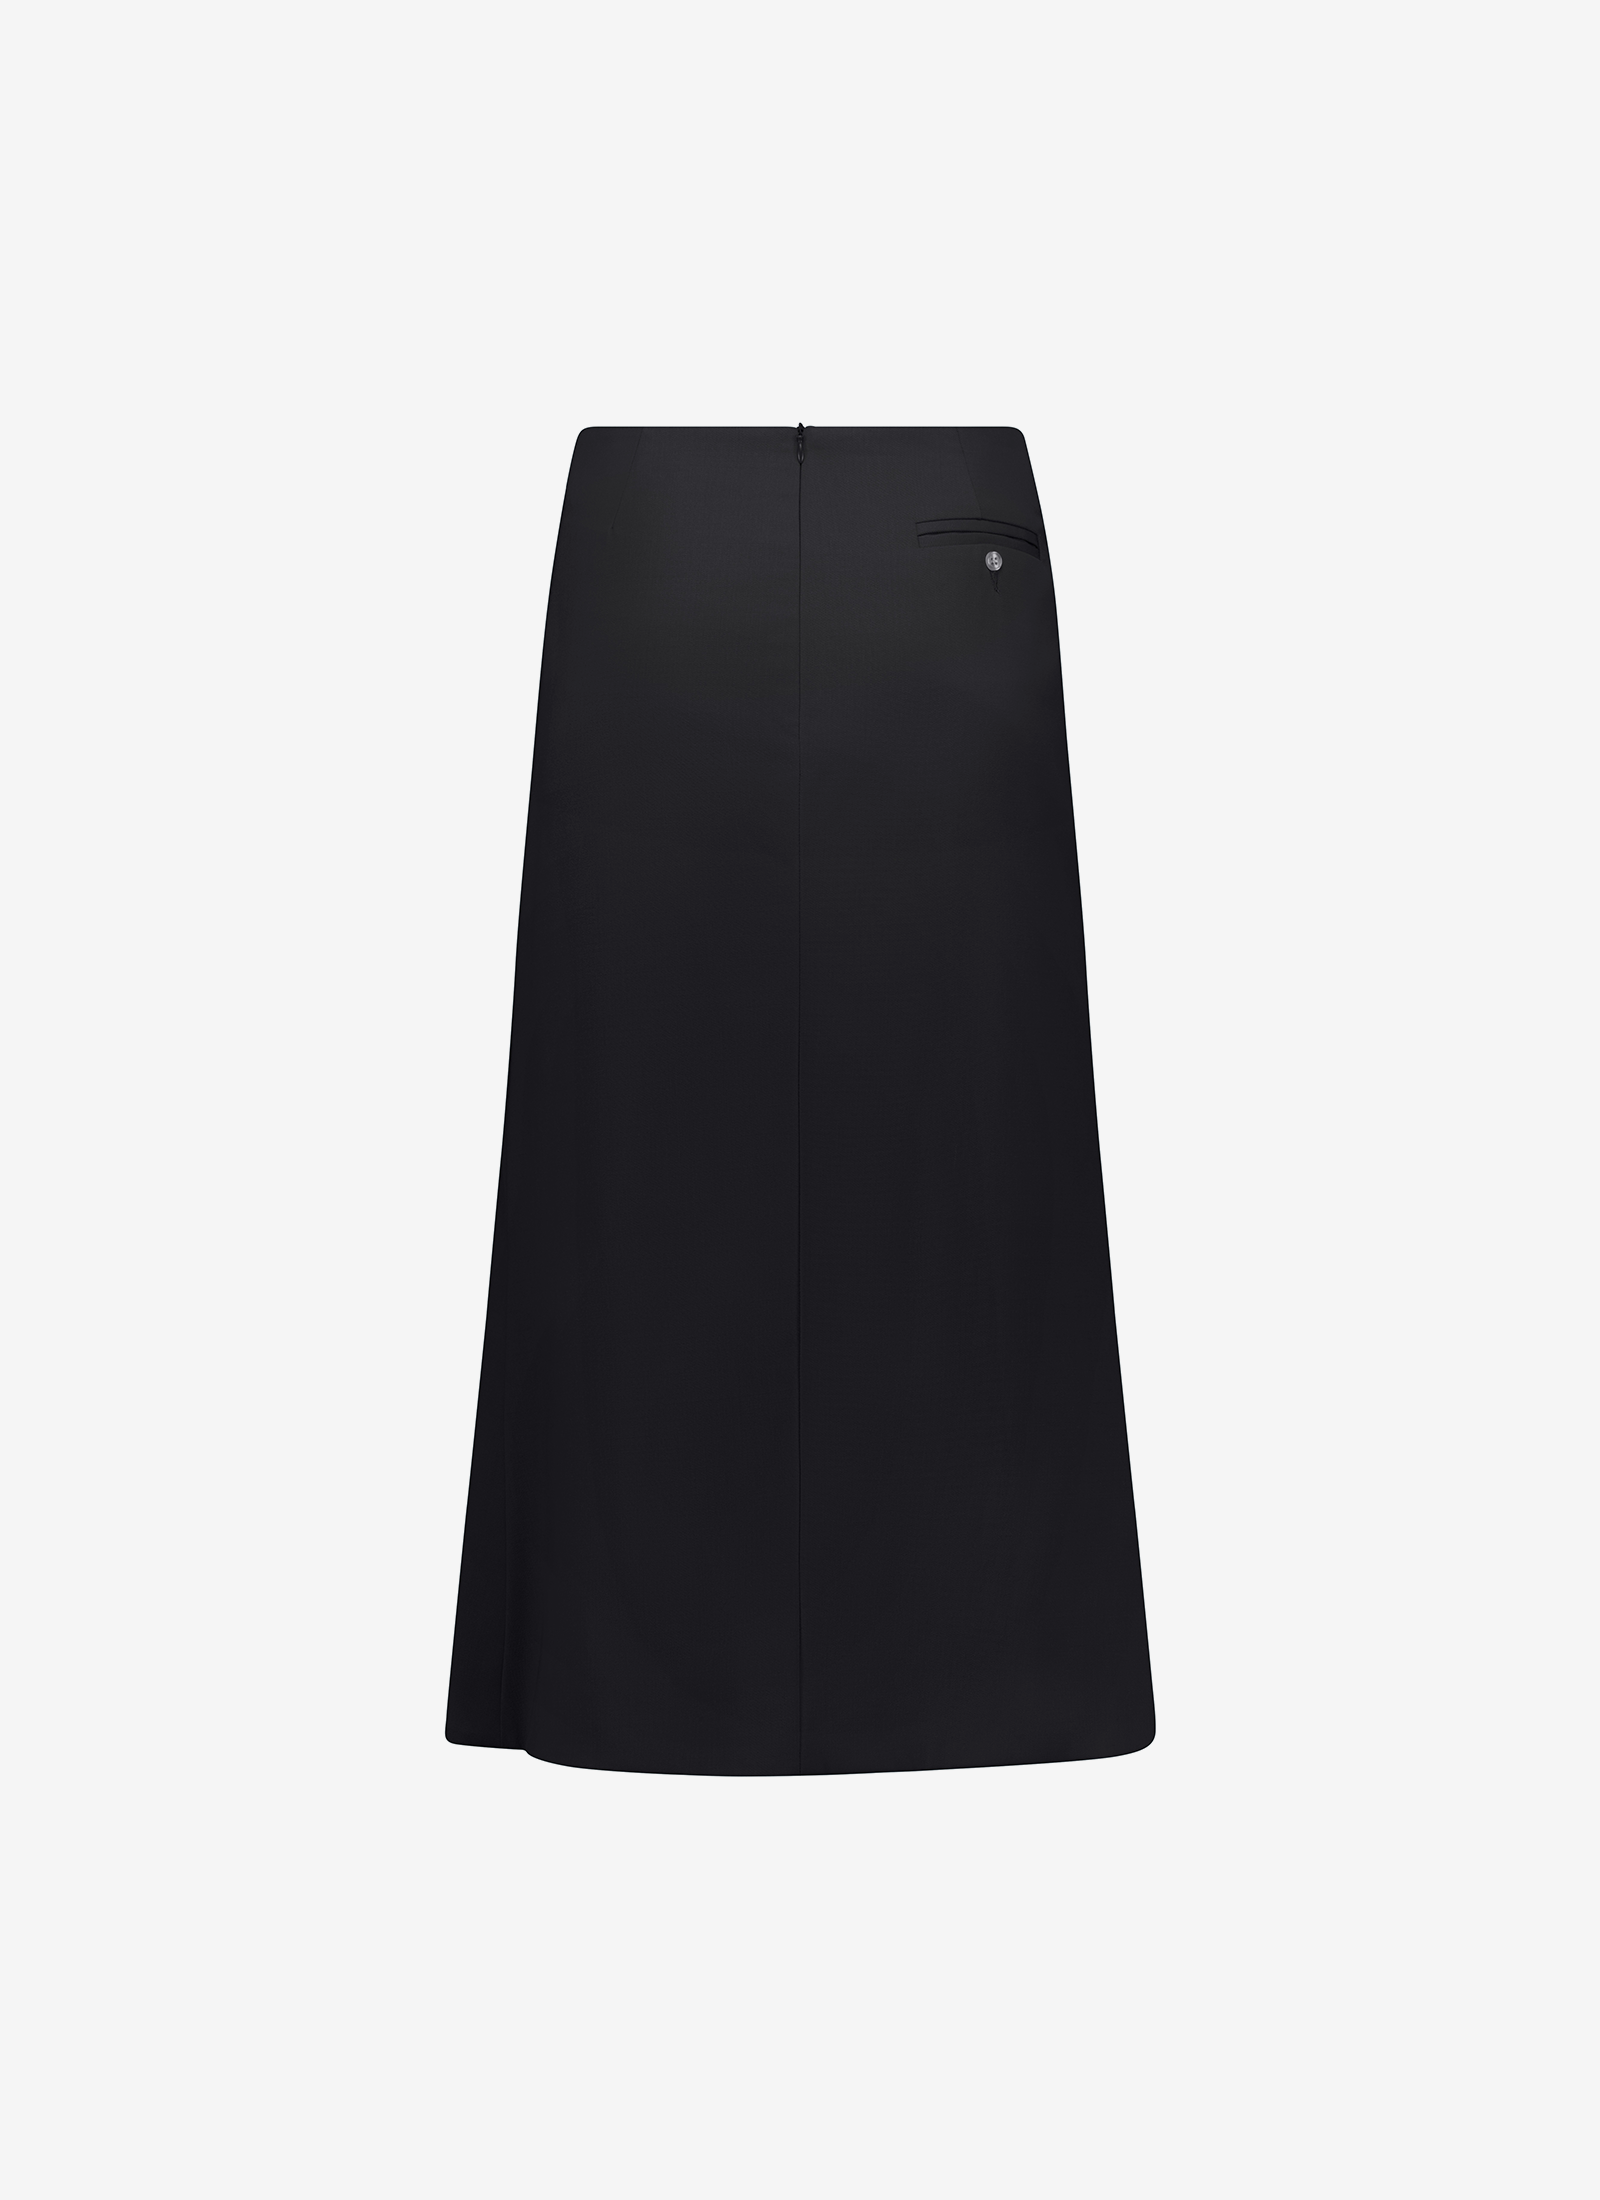 Gita Skirt - Black